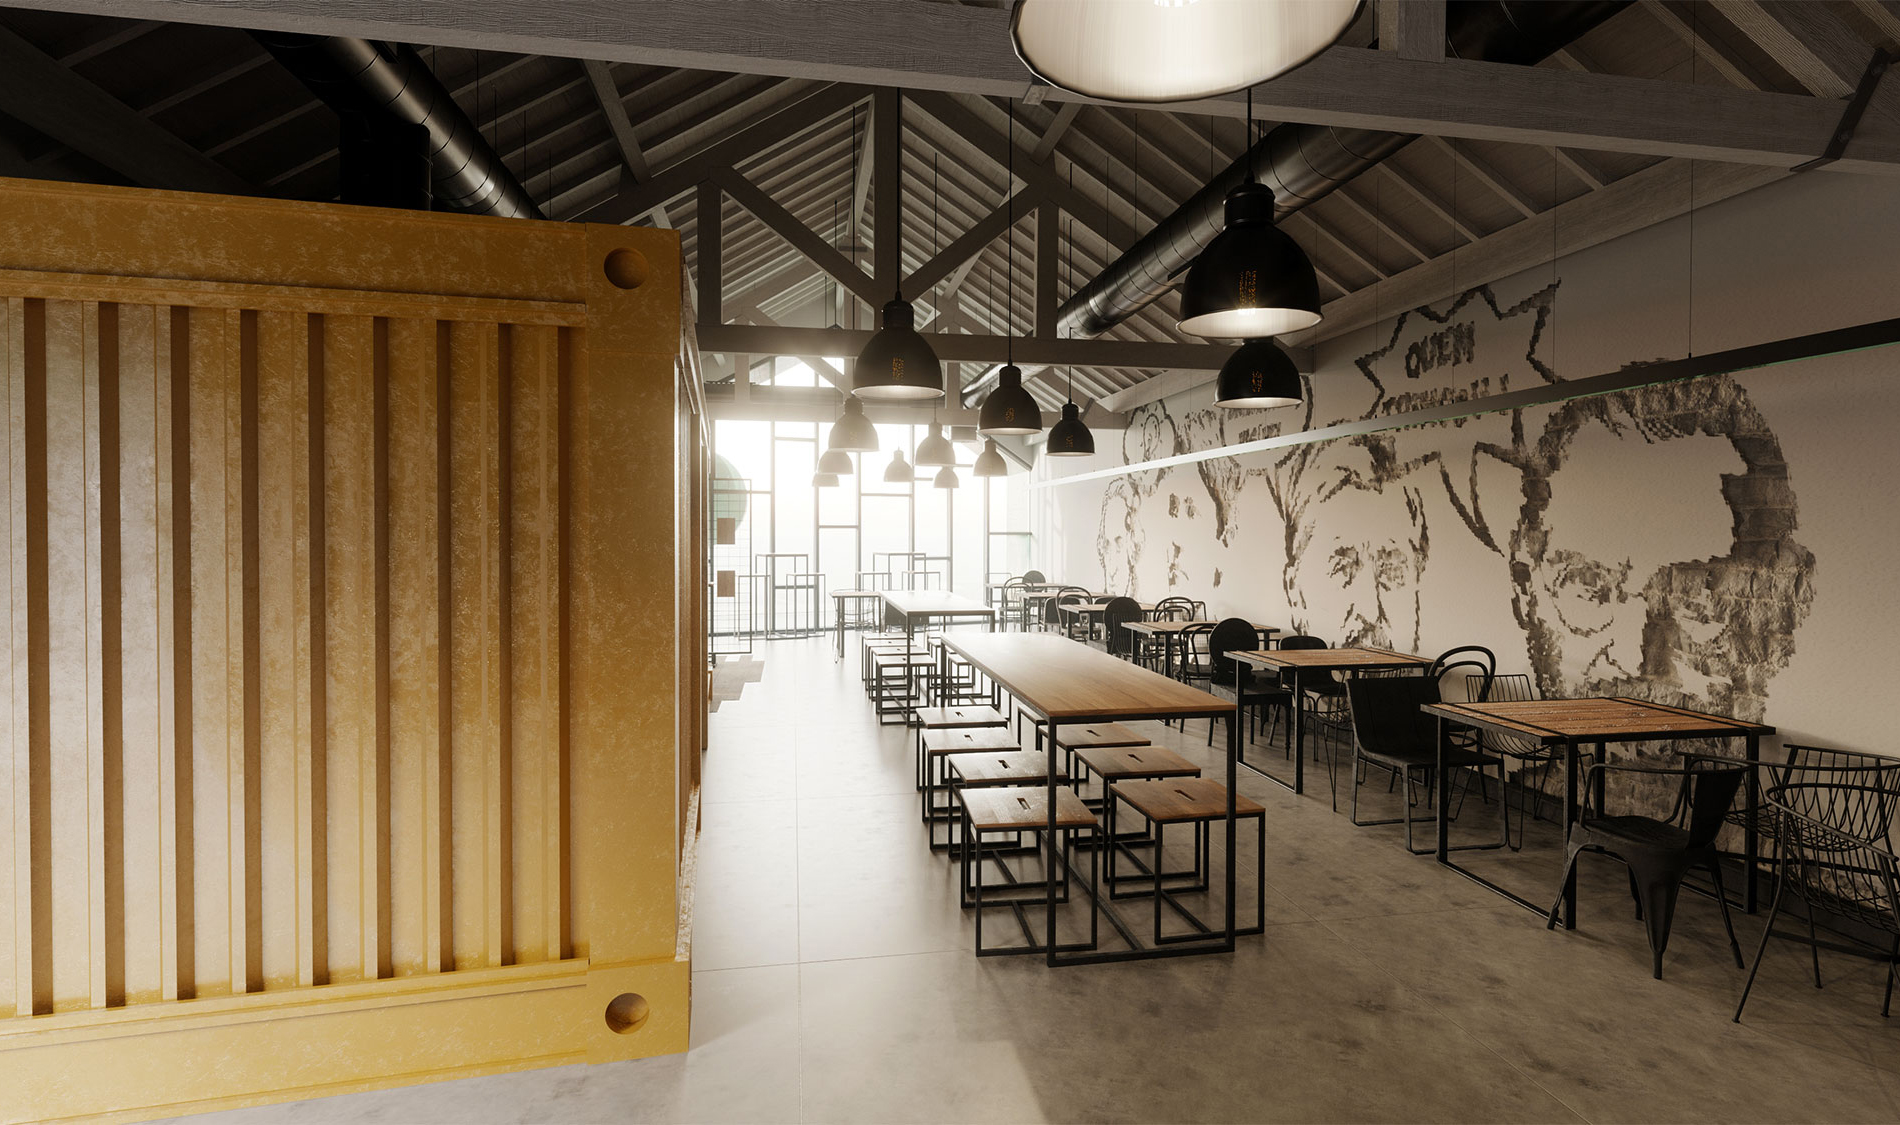 Estilo industrial moderno no projeto do restaurante. Interior sala de refeições. Projeto Obra Atelier